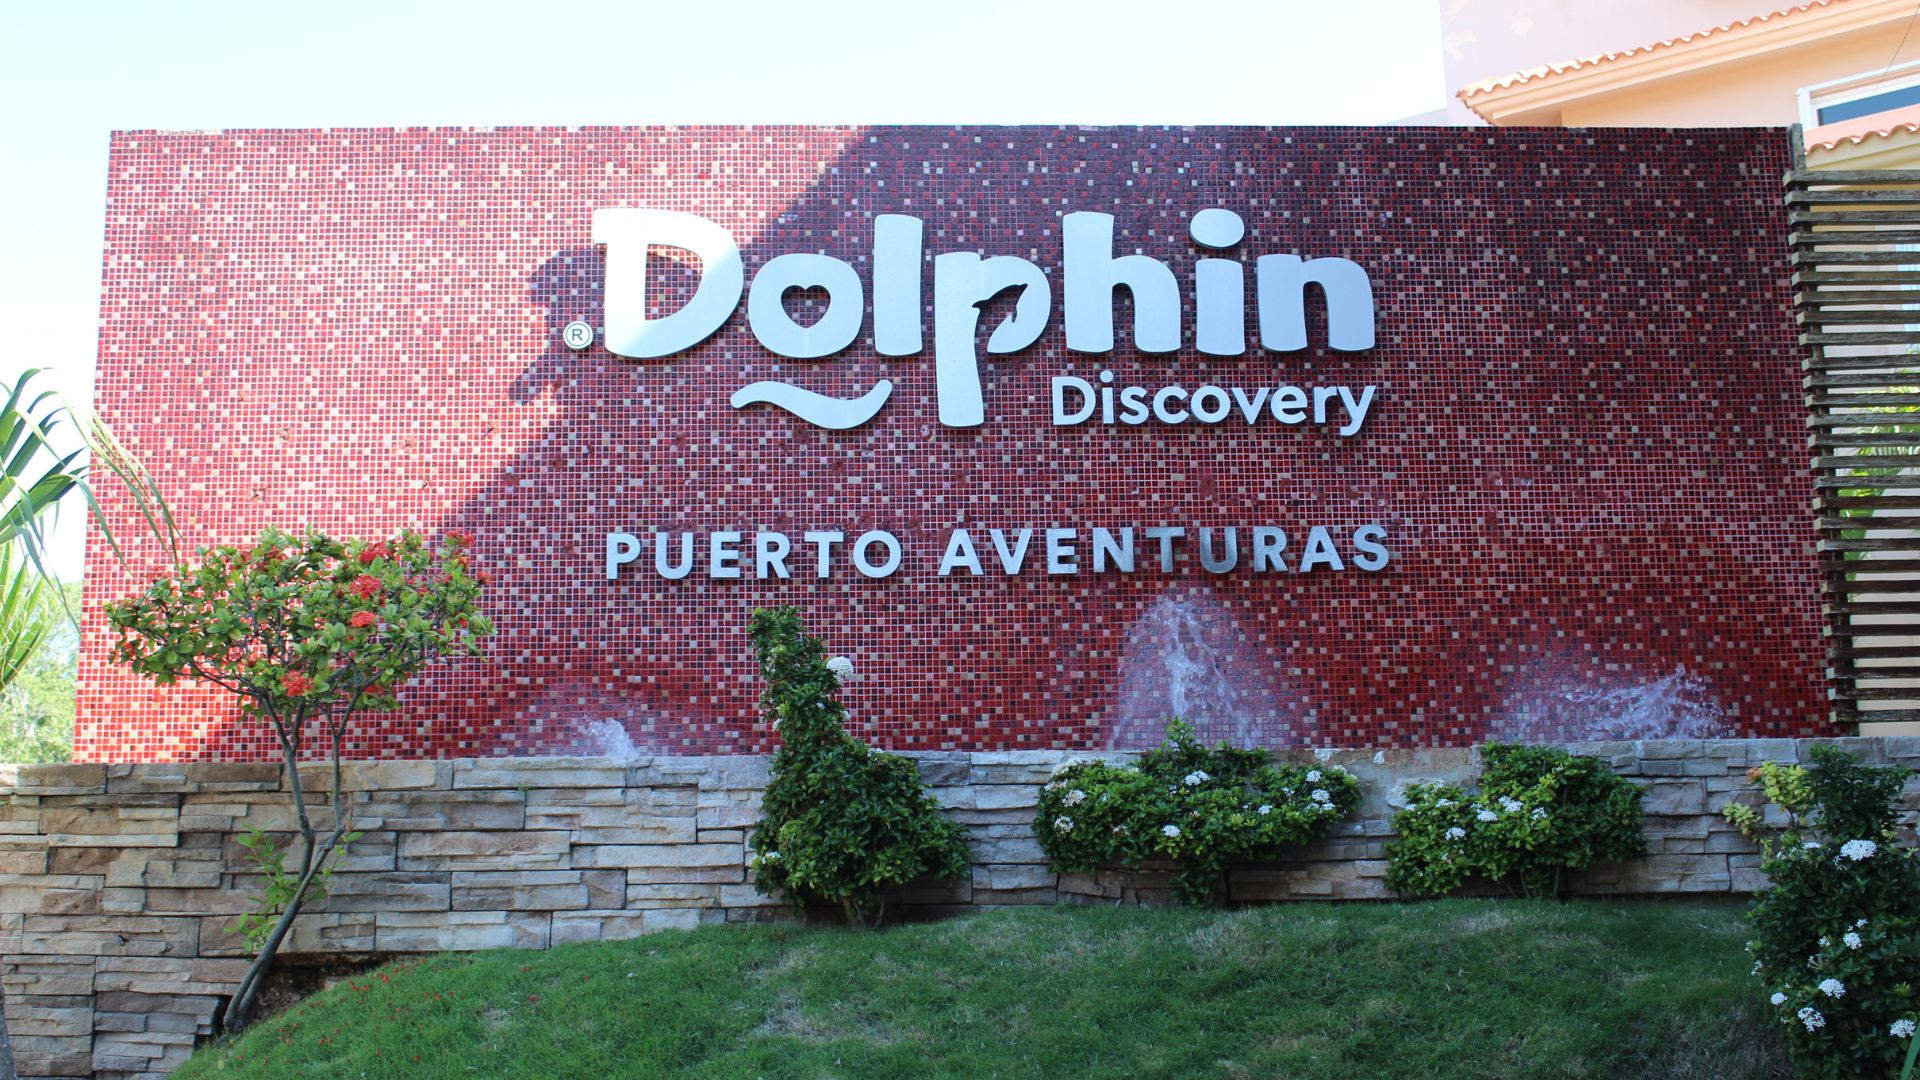 Facade of the Dolphin Discovery Puerto Aventuras location